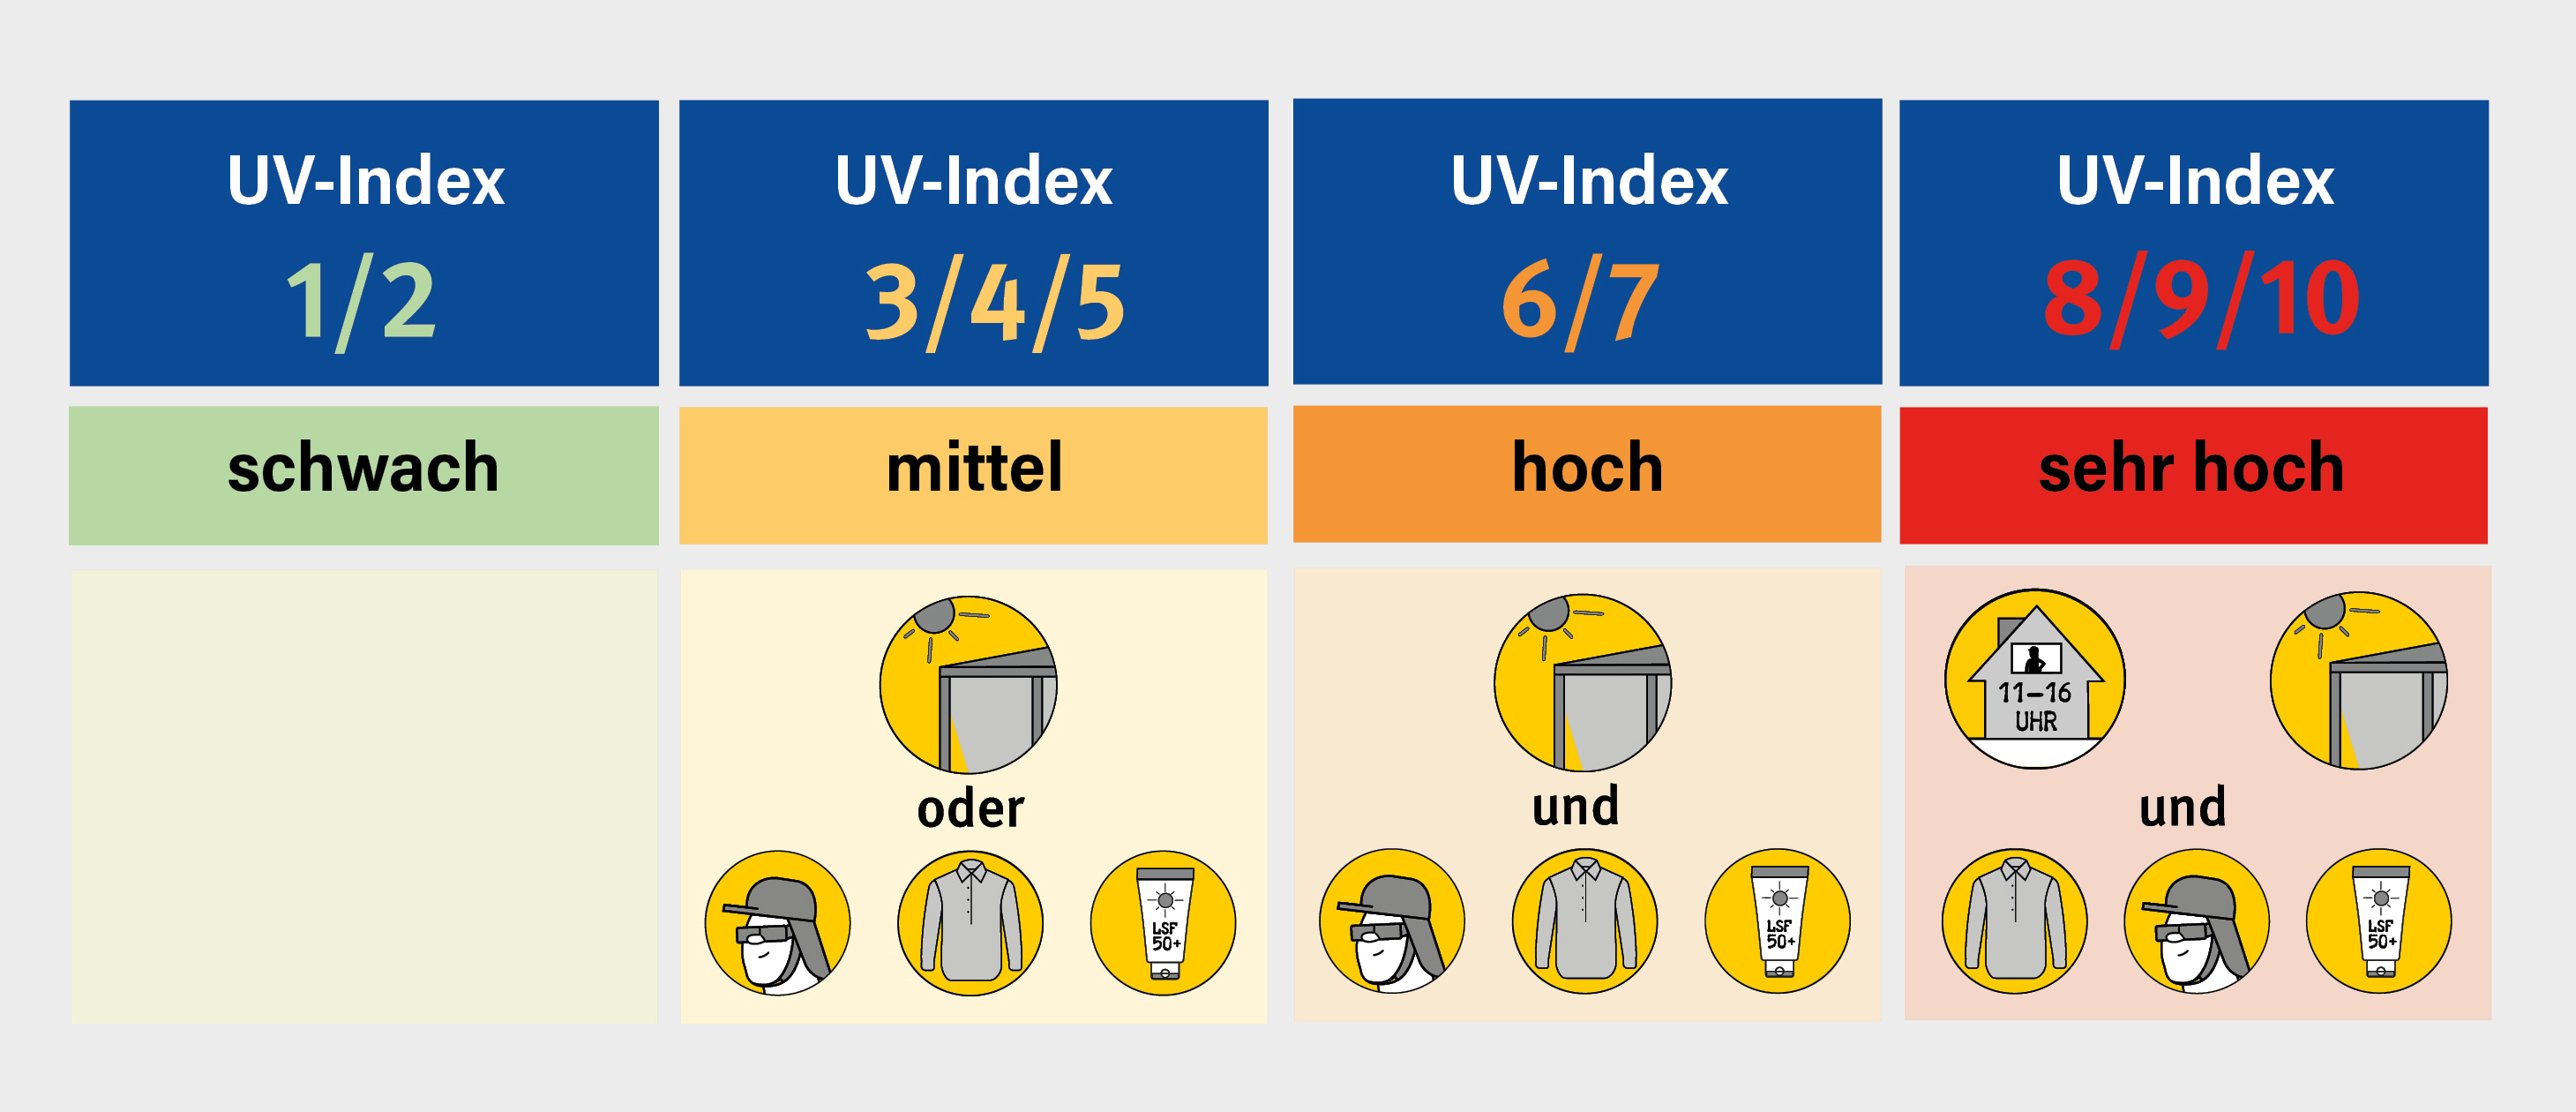 Grafik mit den unterschiedlichen Sufen des UV-Index und Abbildungen zu geeigneten Schutzmaßnahmen